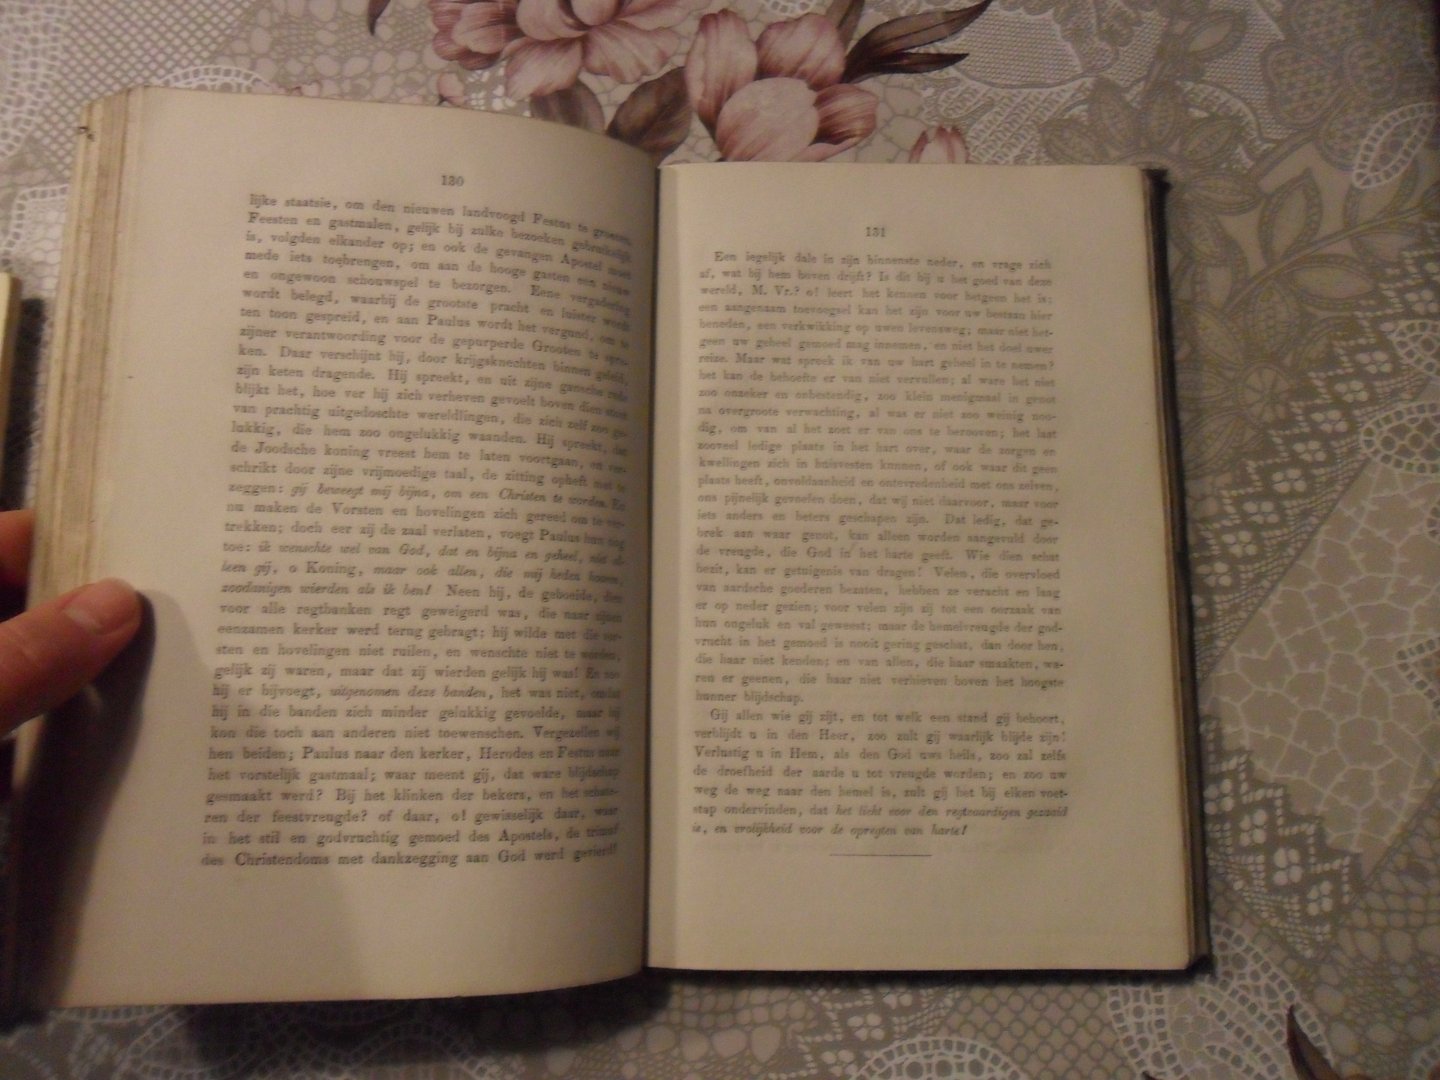 Palm van der J.H. - Godsdienstige overdenkingen een stichtelijk huisboek